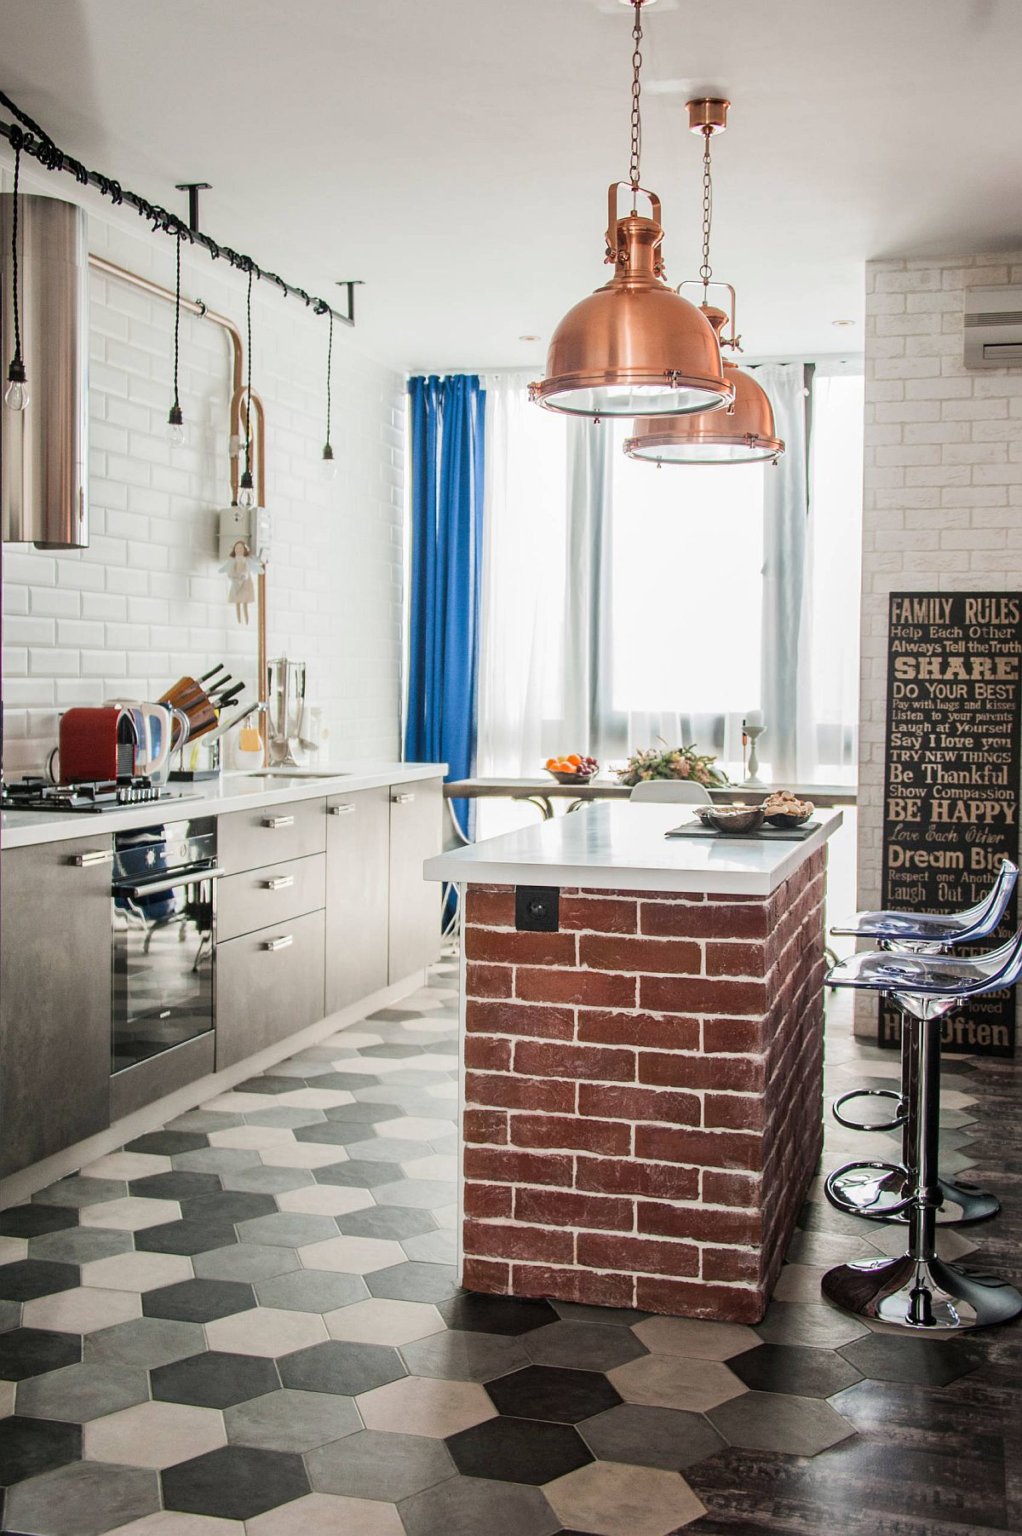 hình ảnh đảo bếp nhỏ xinh bằng gạch đỏ trong phòng bếp phong cách công nghiệp